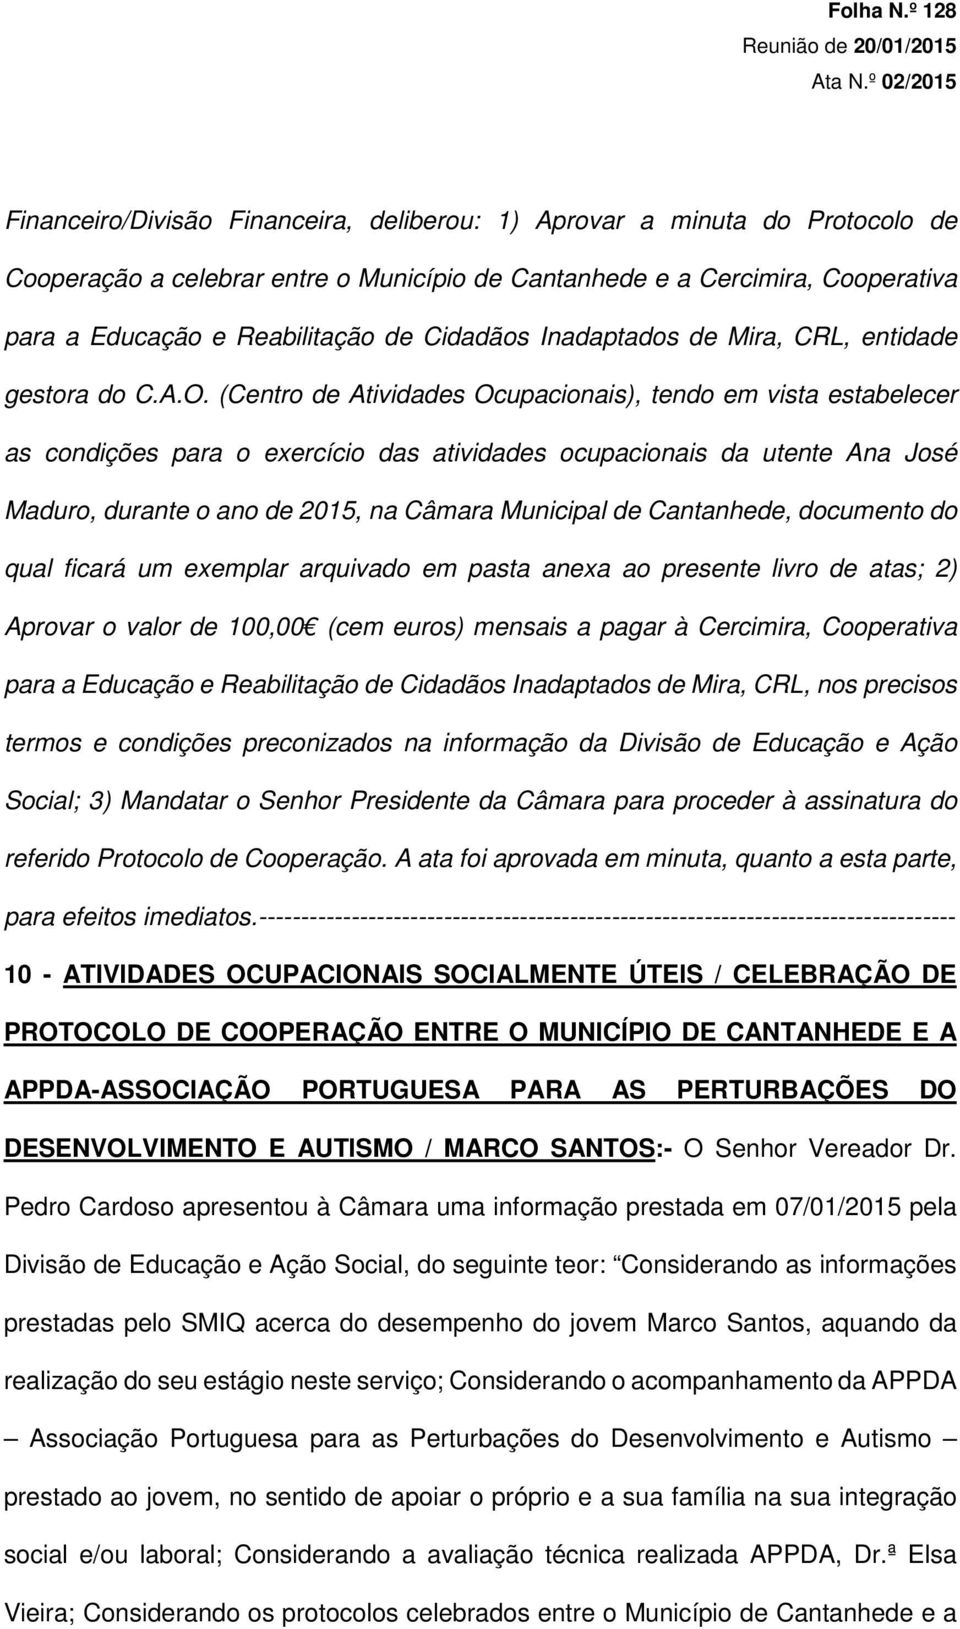 Cidadãos Inadaptados de Mira, CRL, entidade gestora do C.A.O.